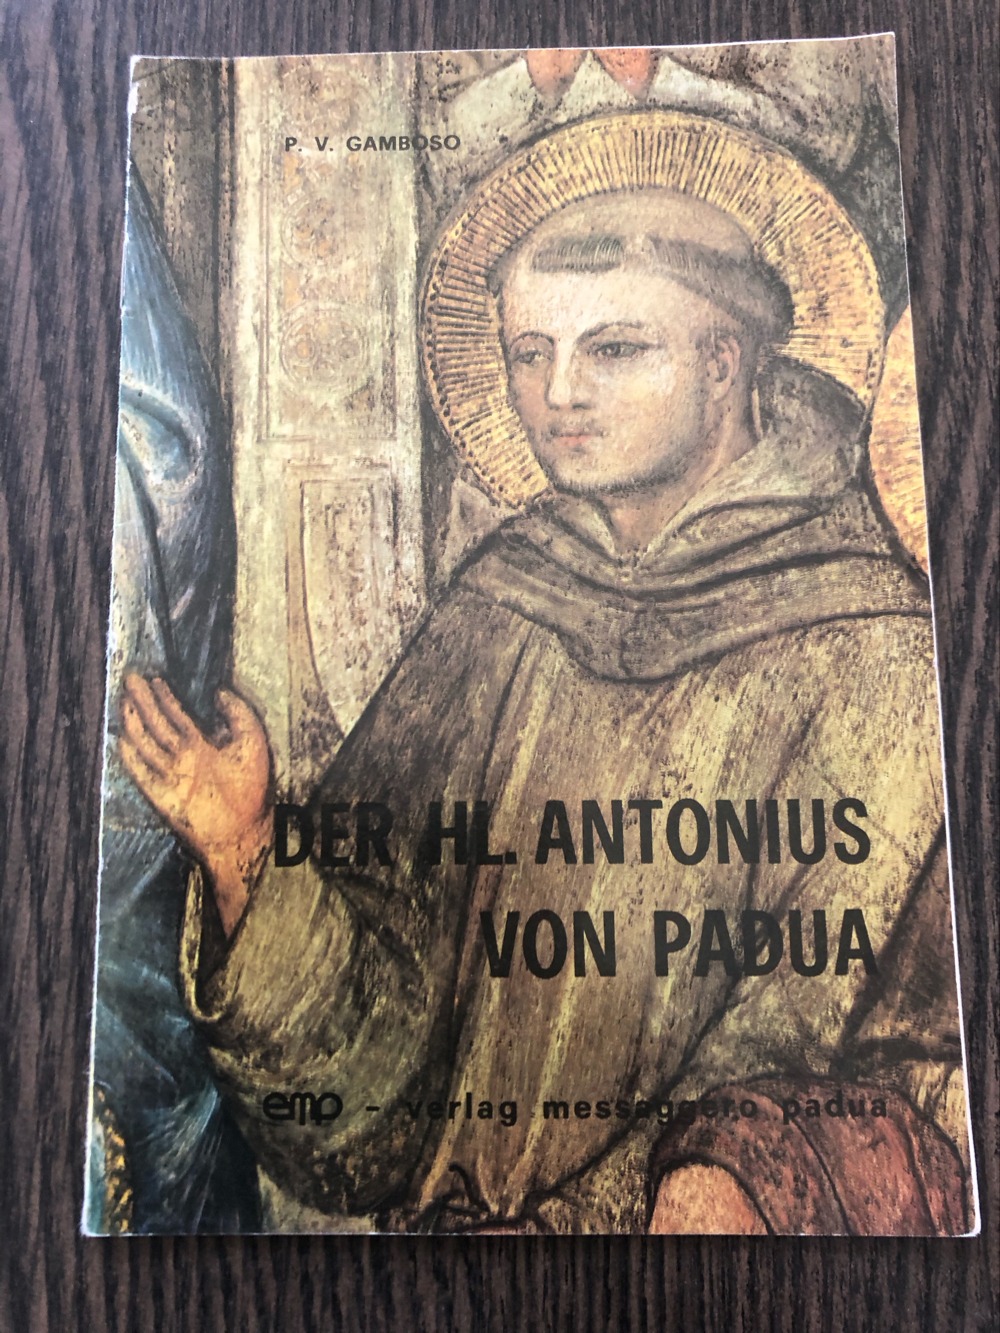 Rarität: Der heilige Antonius von Padua, 1983